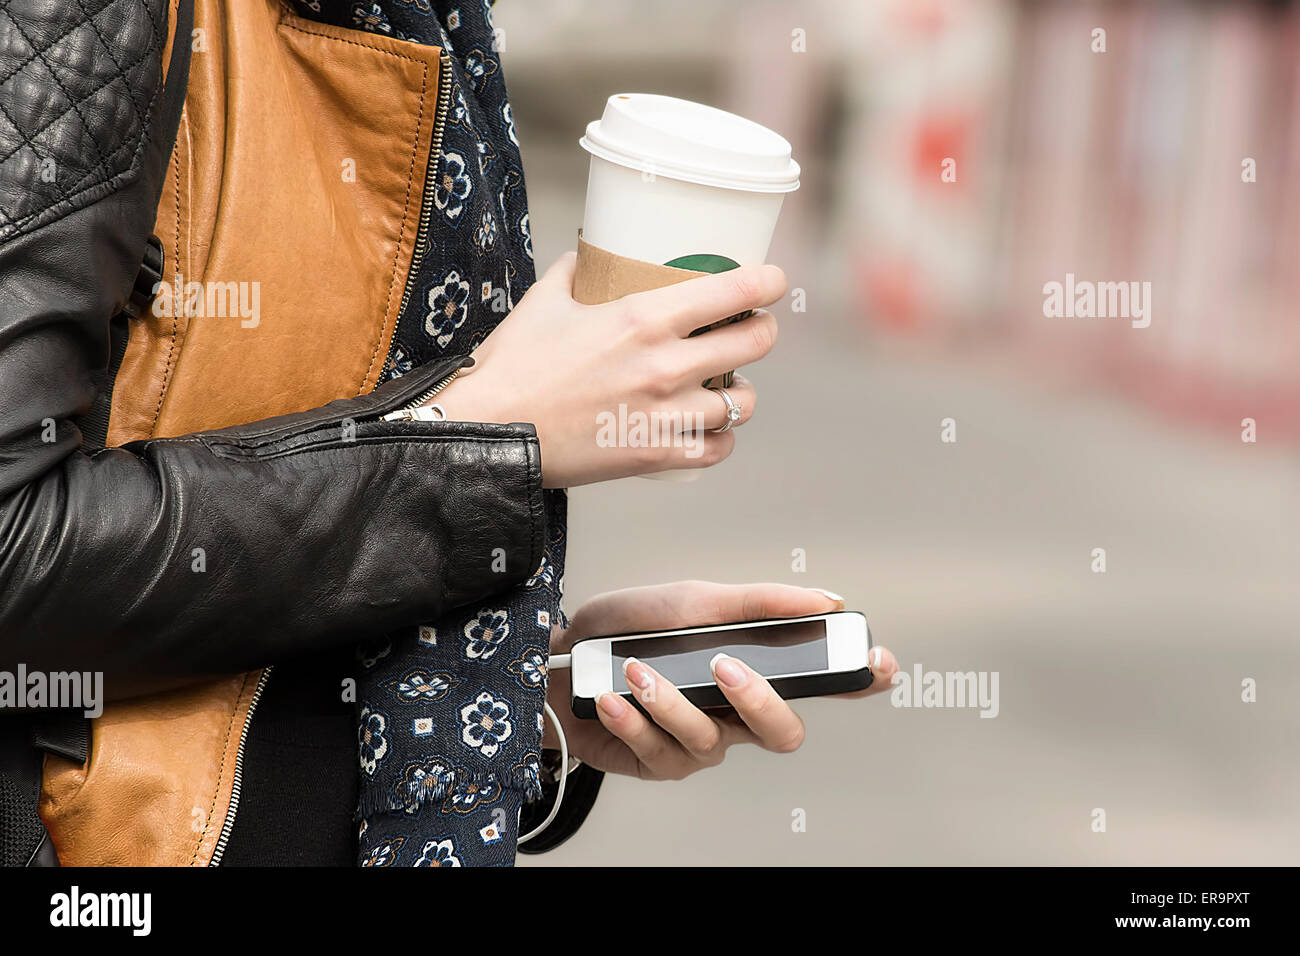 Équipées d'une cafetière et d'un téléphone mobile dans la rue. Concept de modernisation de la ville. Banque D'Images